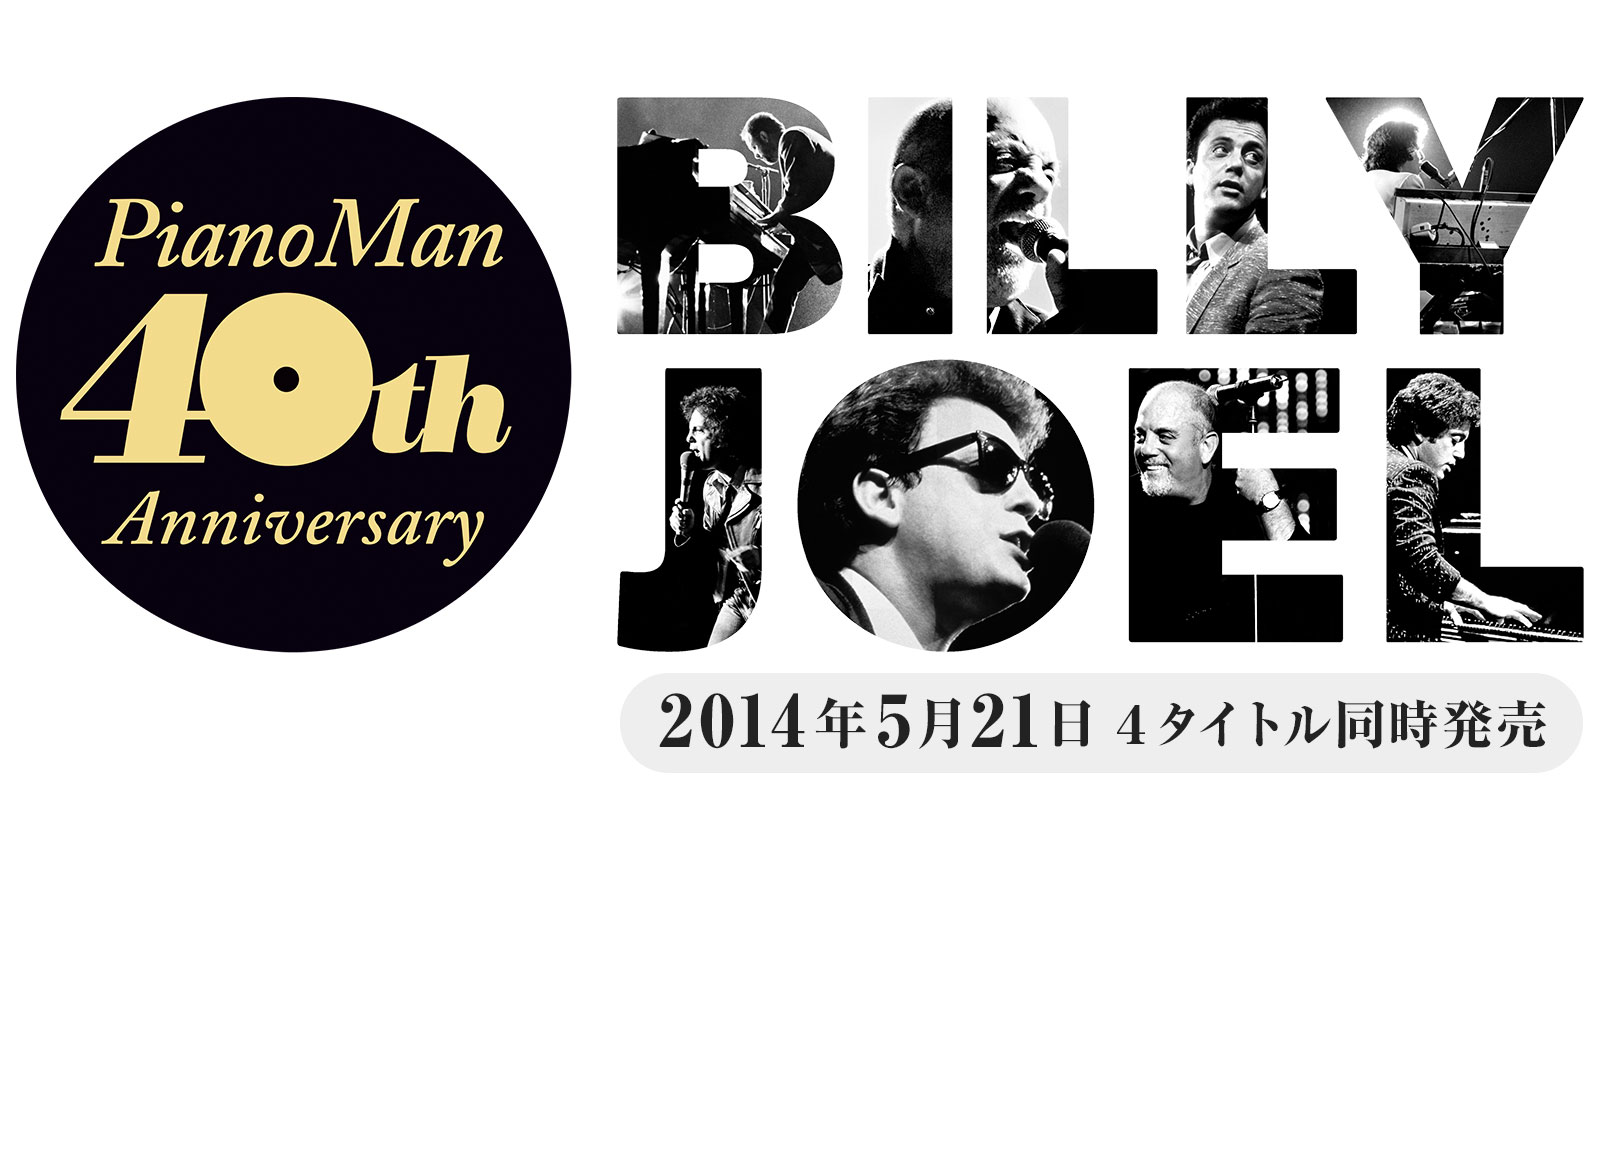 『ピアノ・マン』40周年、ビリー・ジョエル祭り開催!!